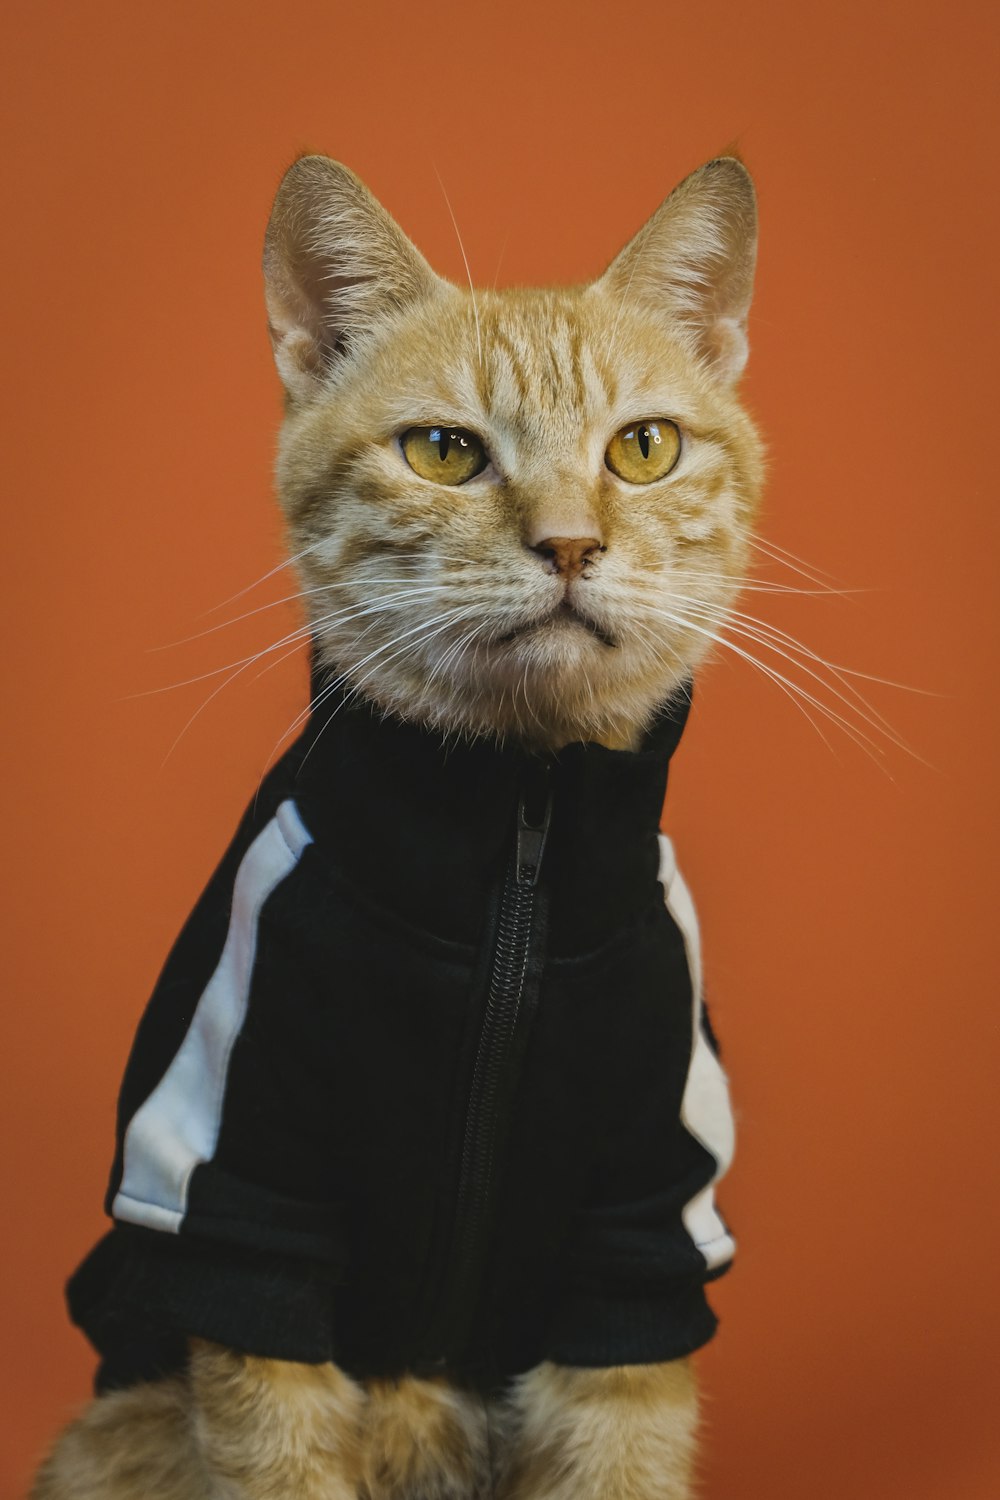 Orange tabby cat in black and white jacket photo – Free Cat Image on  Unsplash